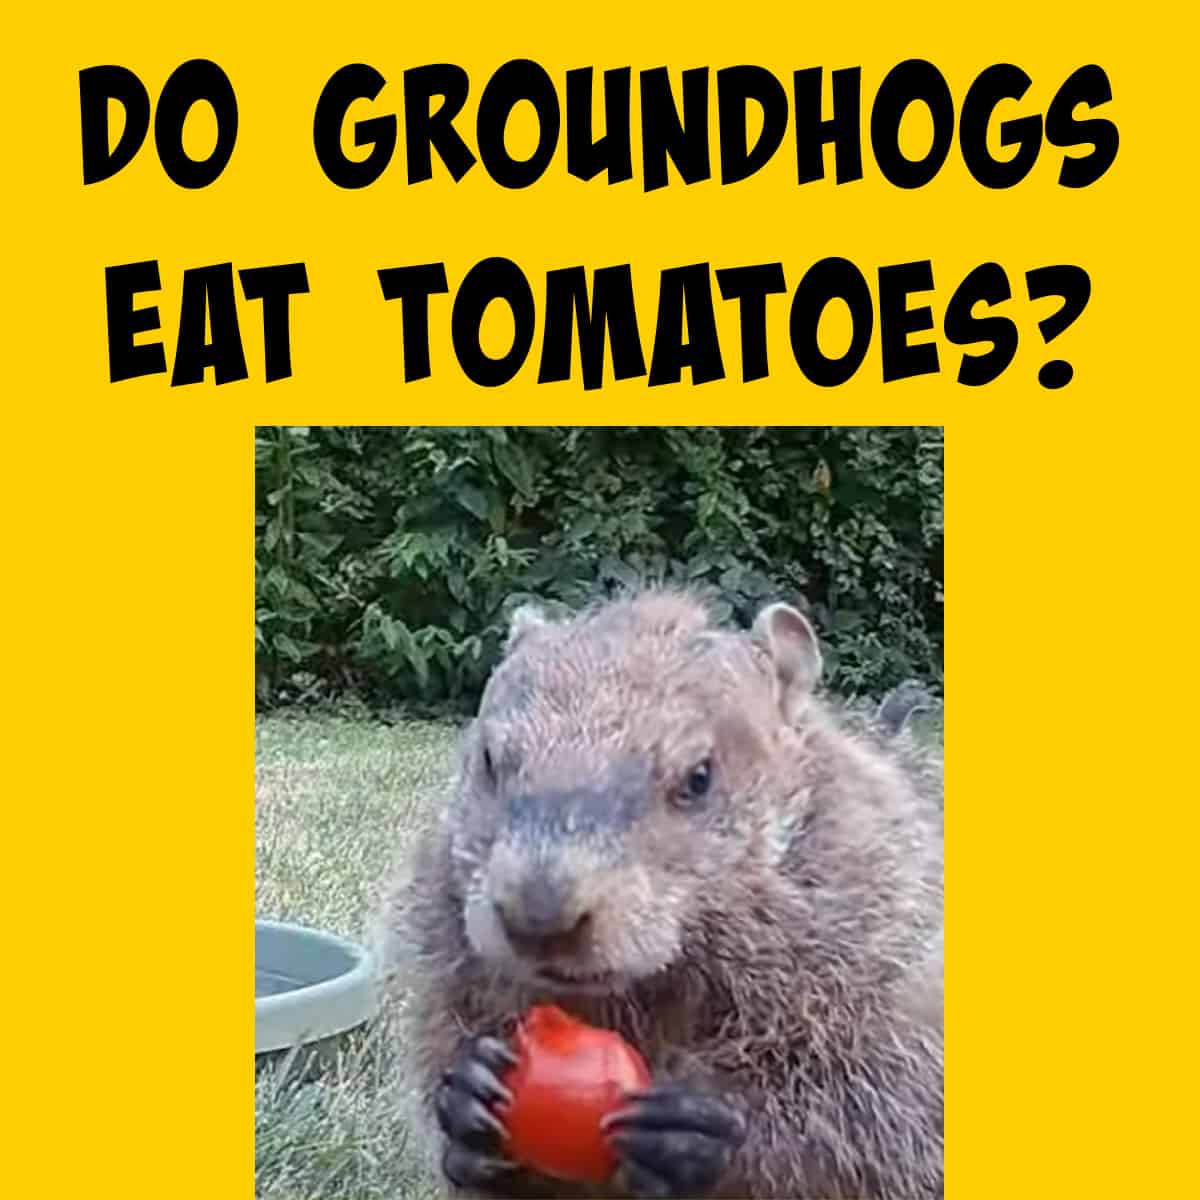 Groundhog Eating a Tomato